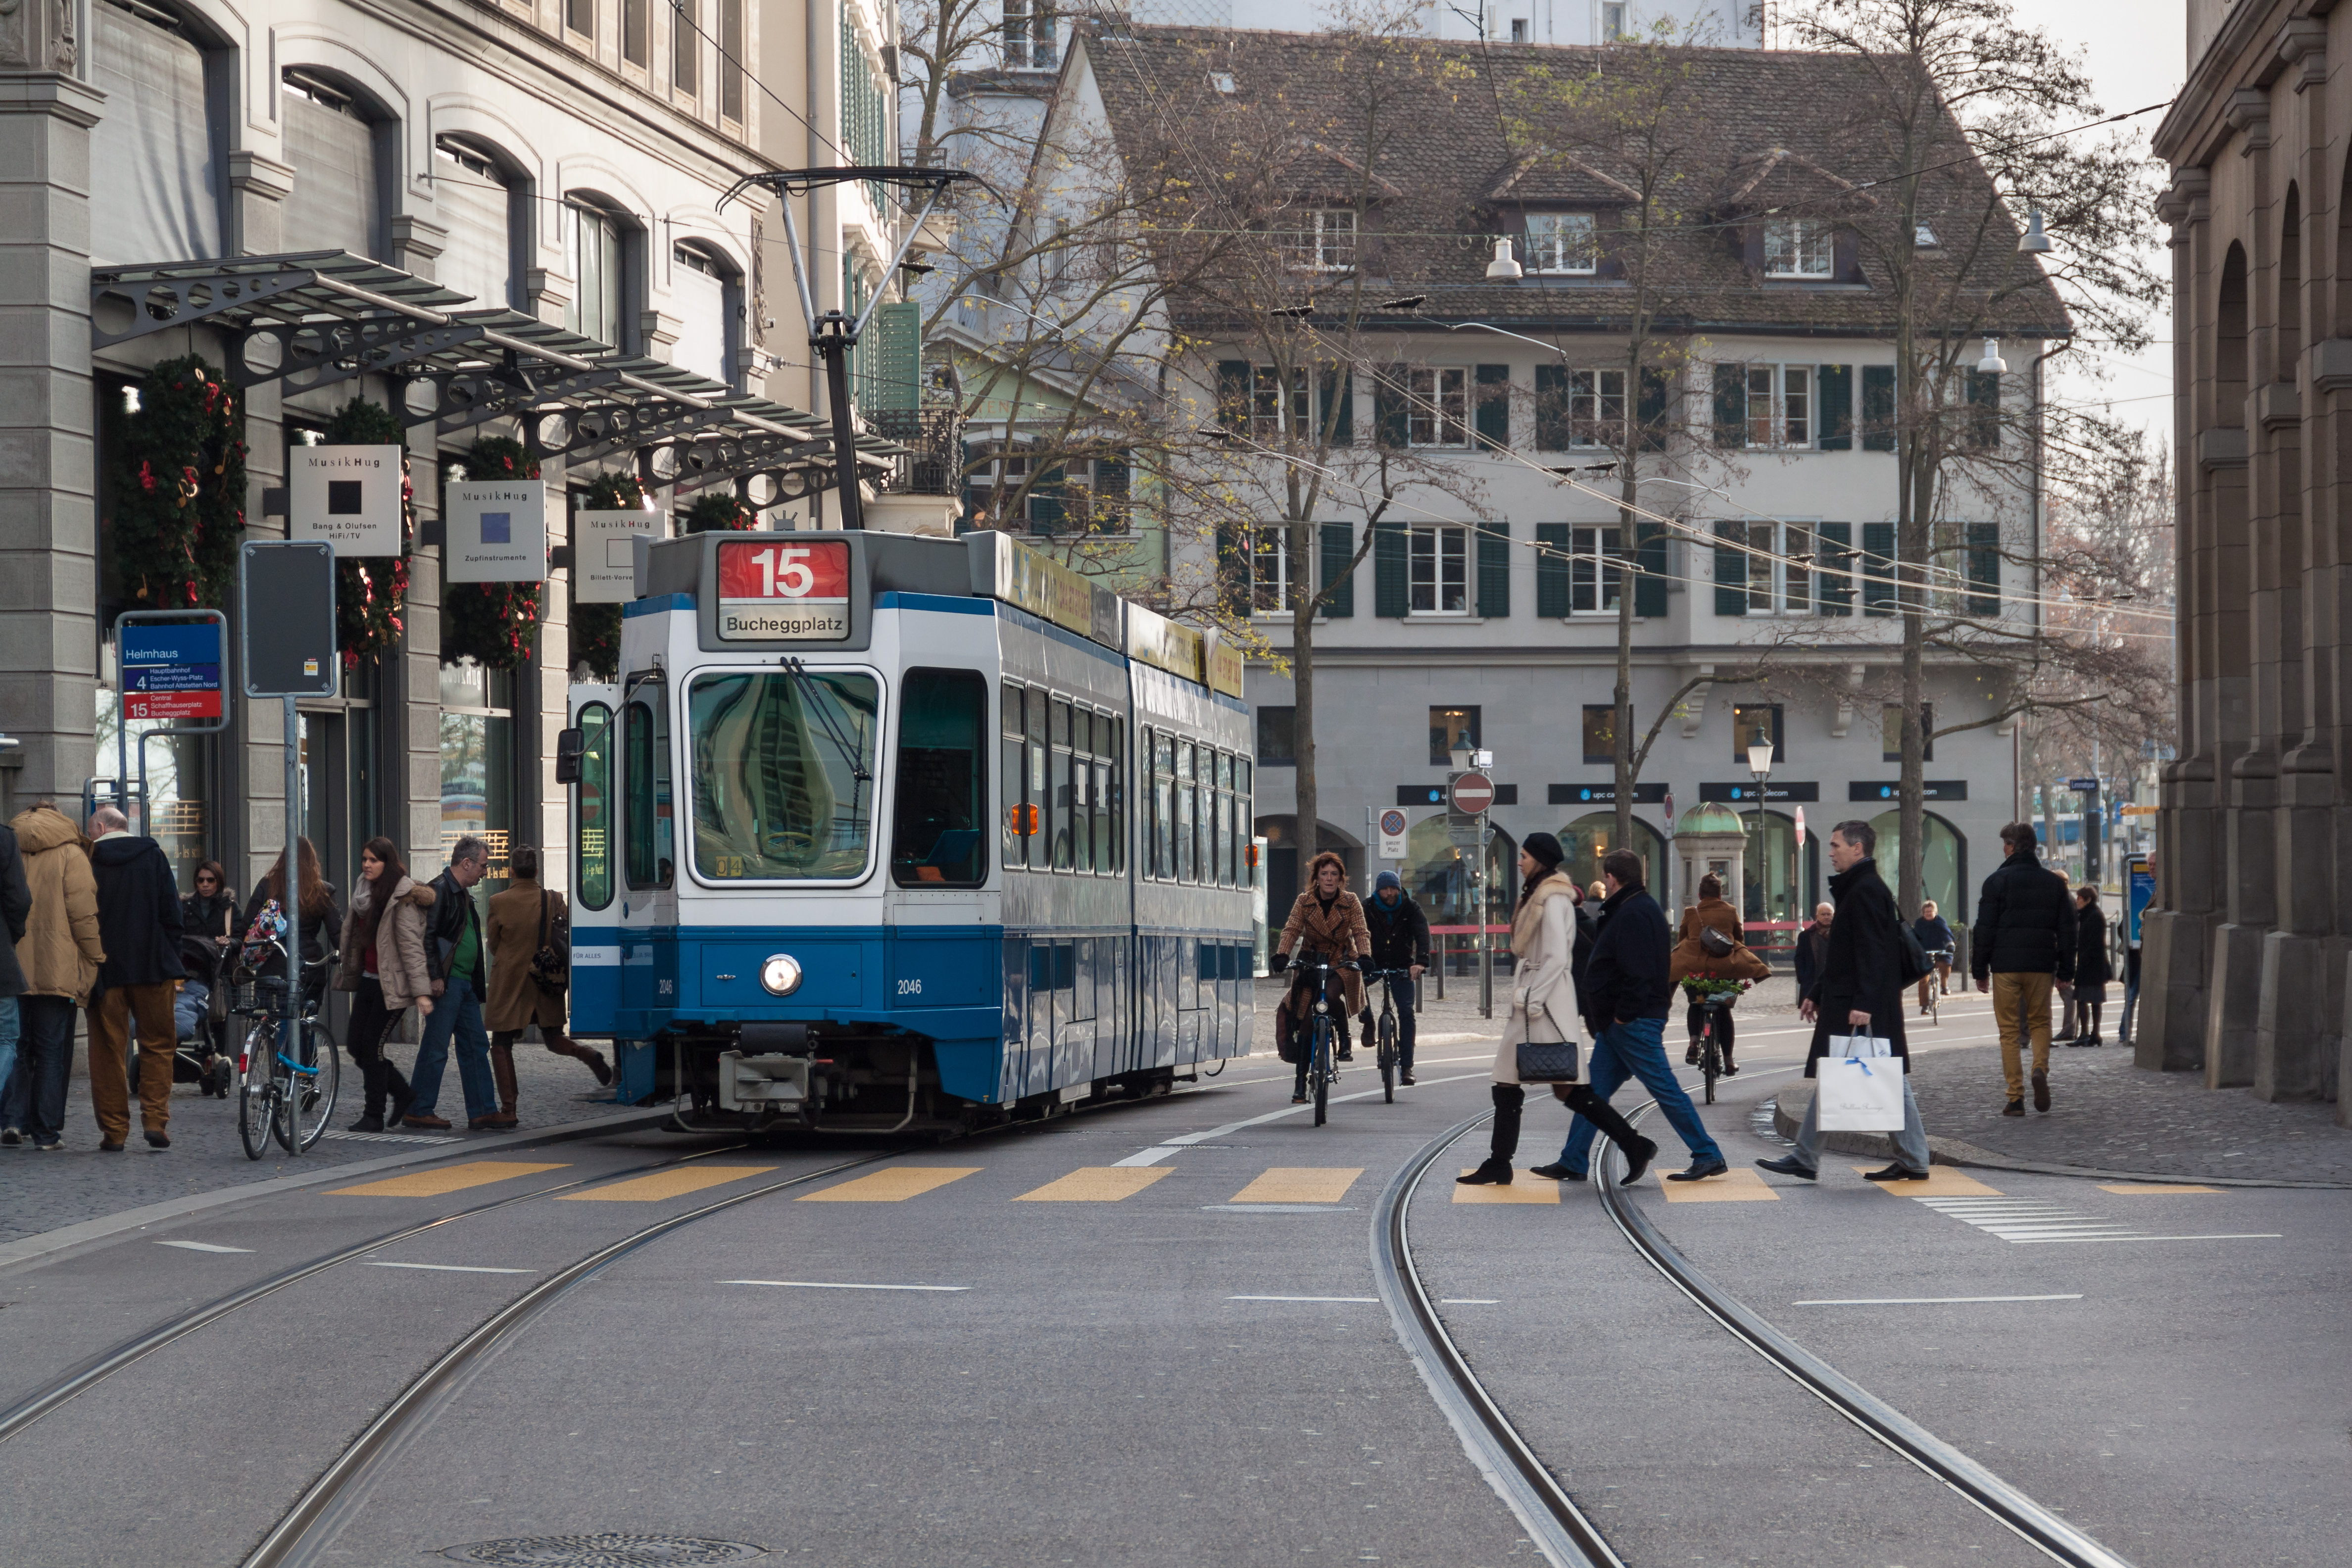 Zürich - Limmatquai with tram